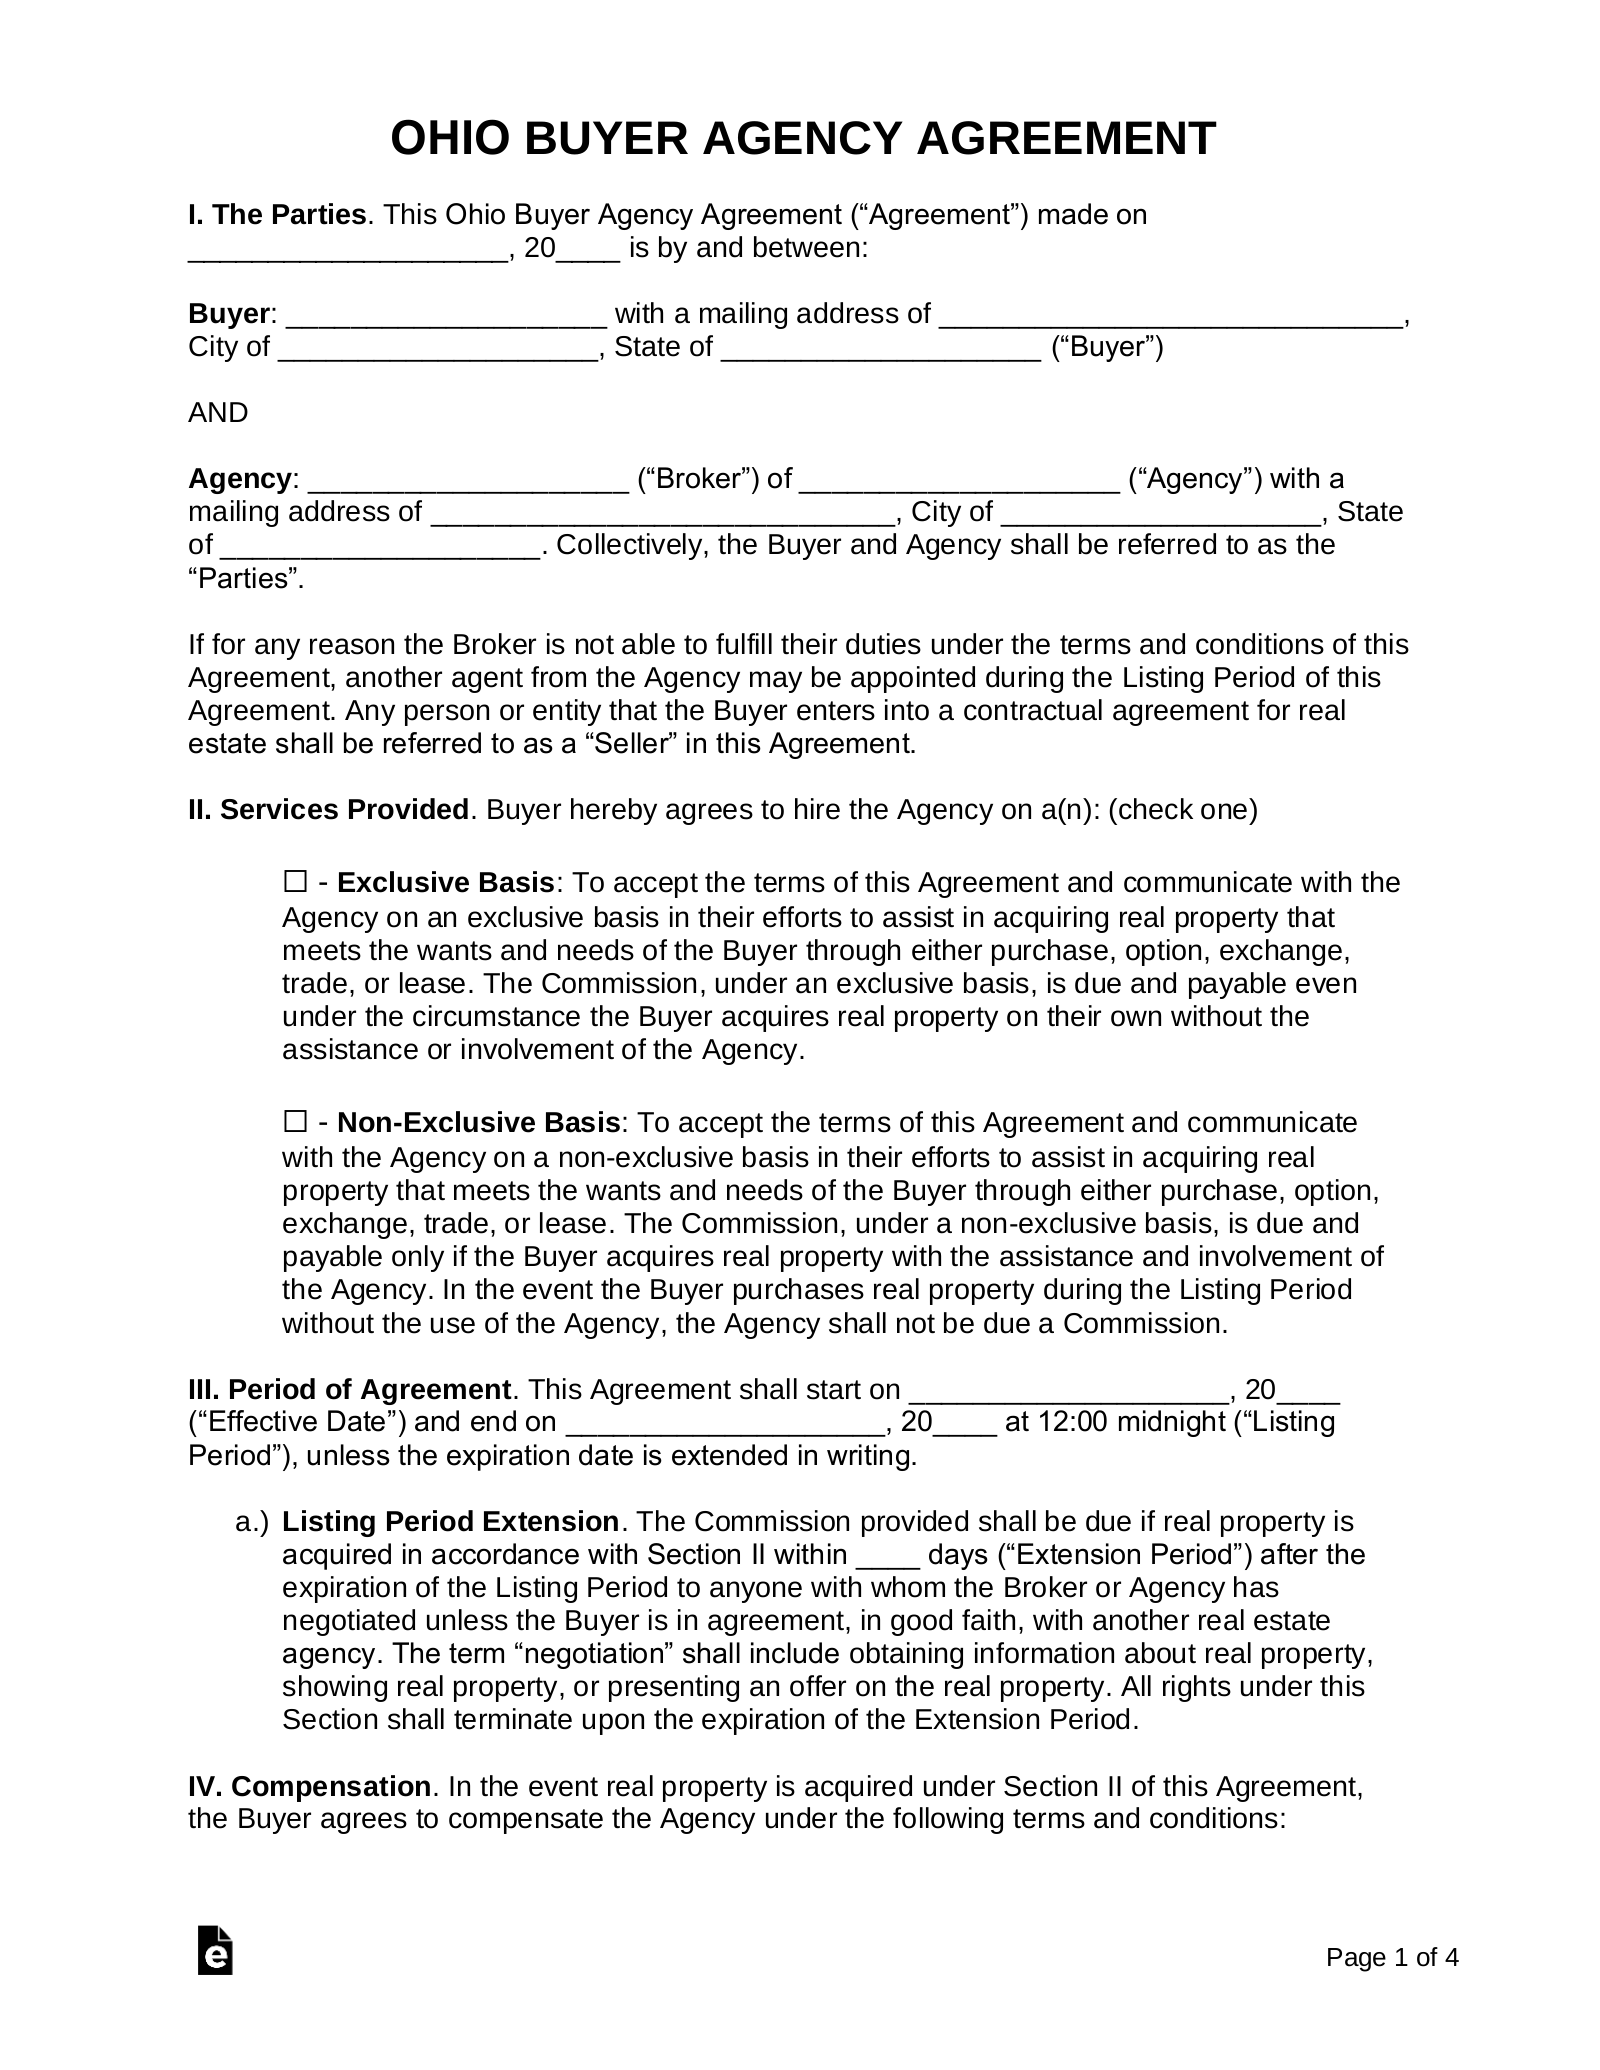 Ohio Buyer Agency Agreement